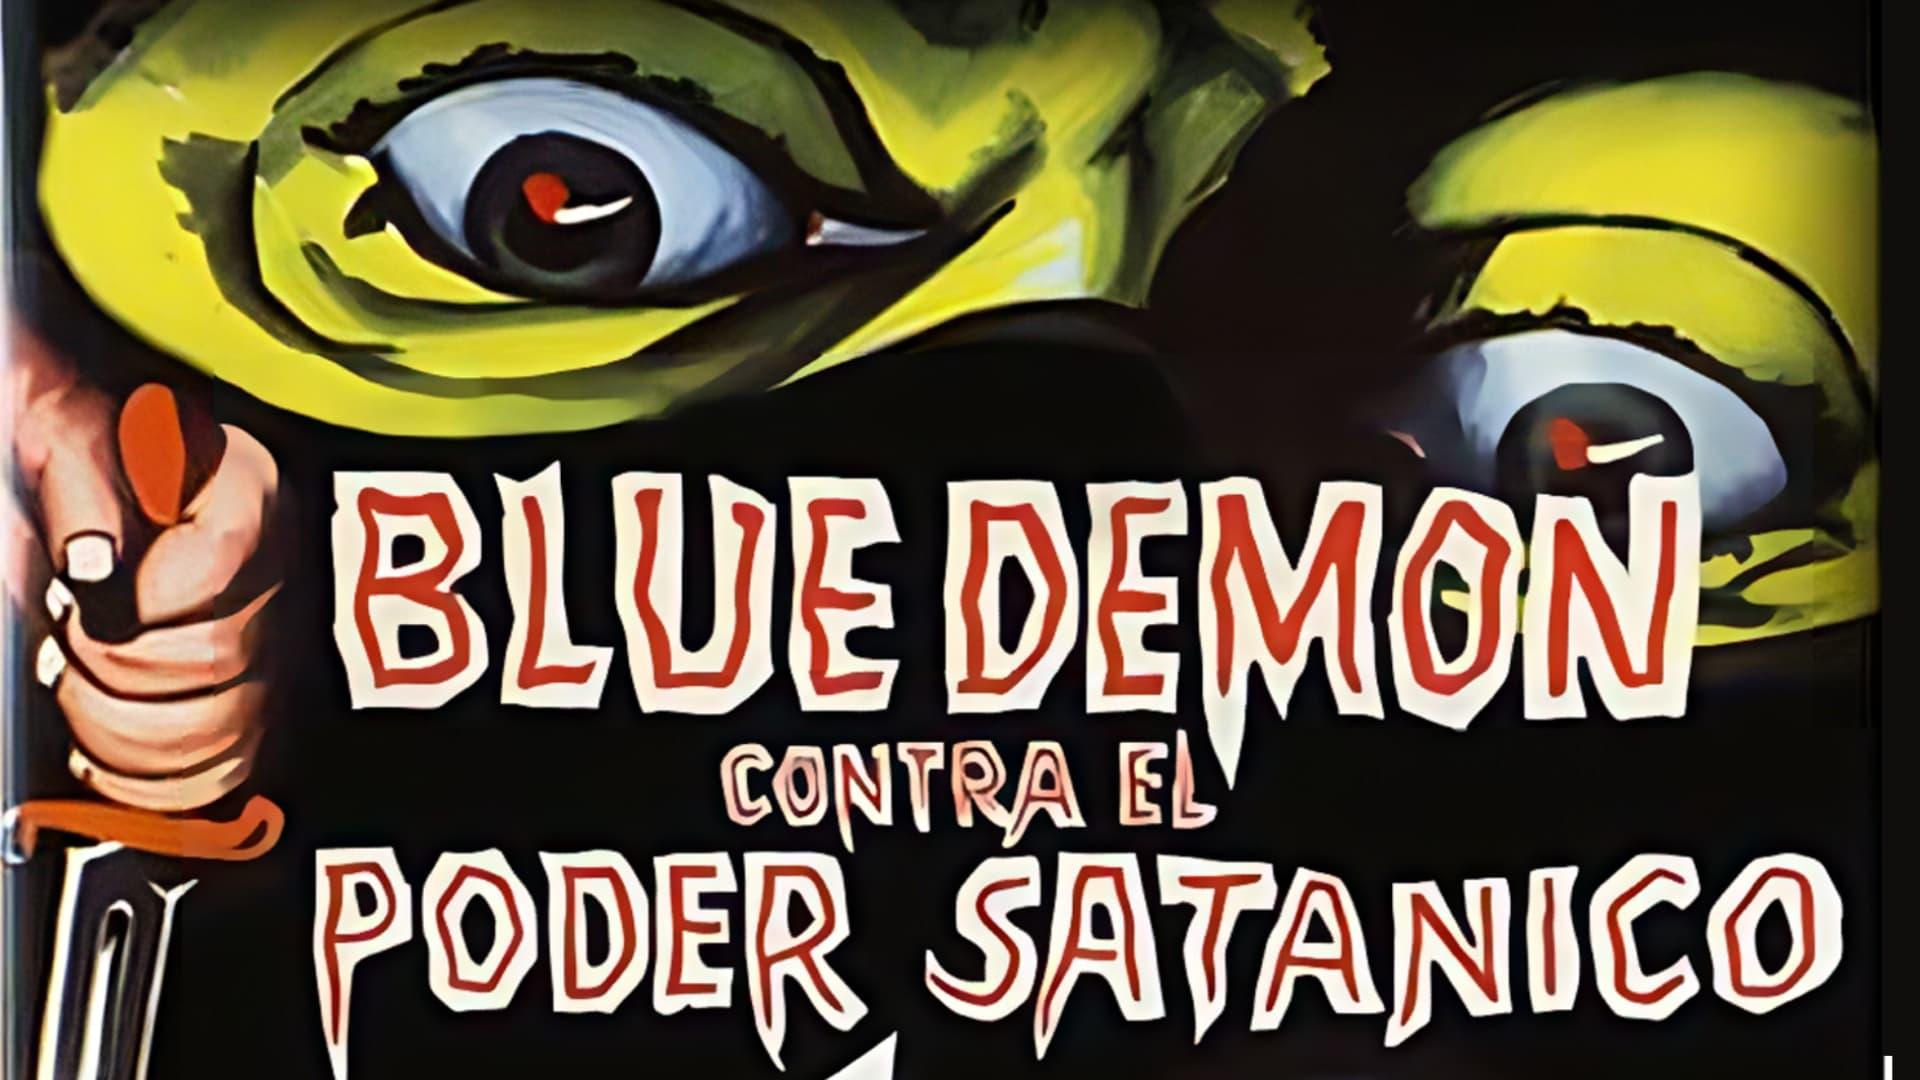 Blue Demon vs. the Satanic Power backdrop